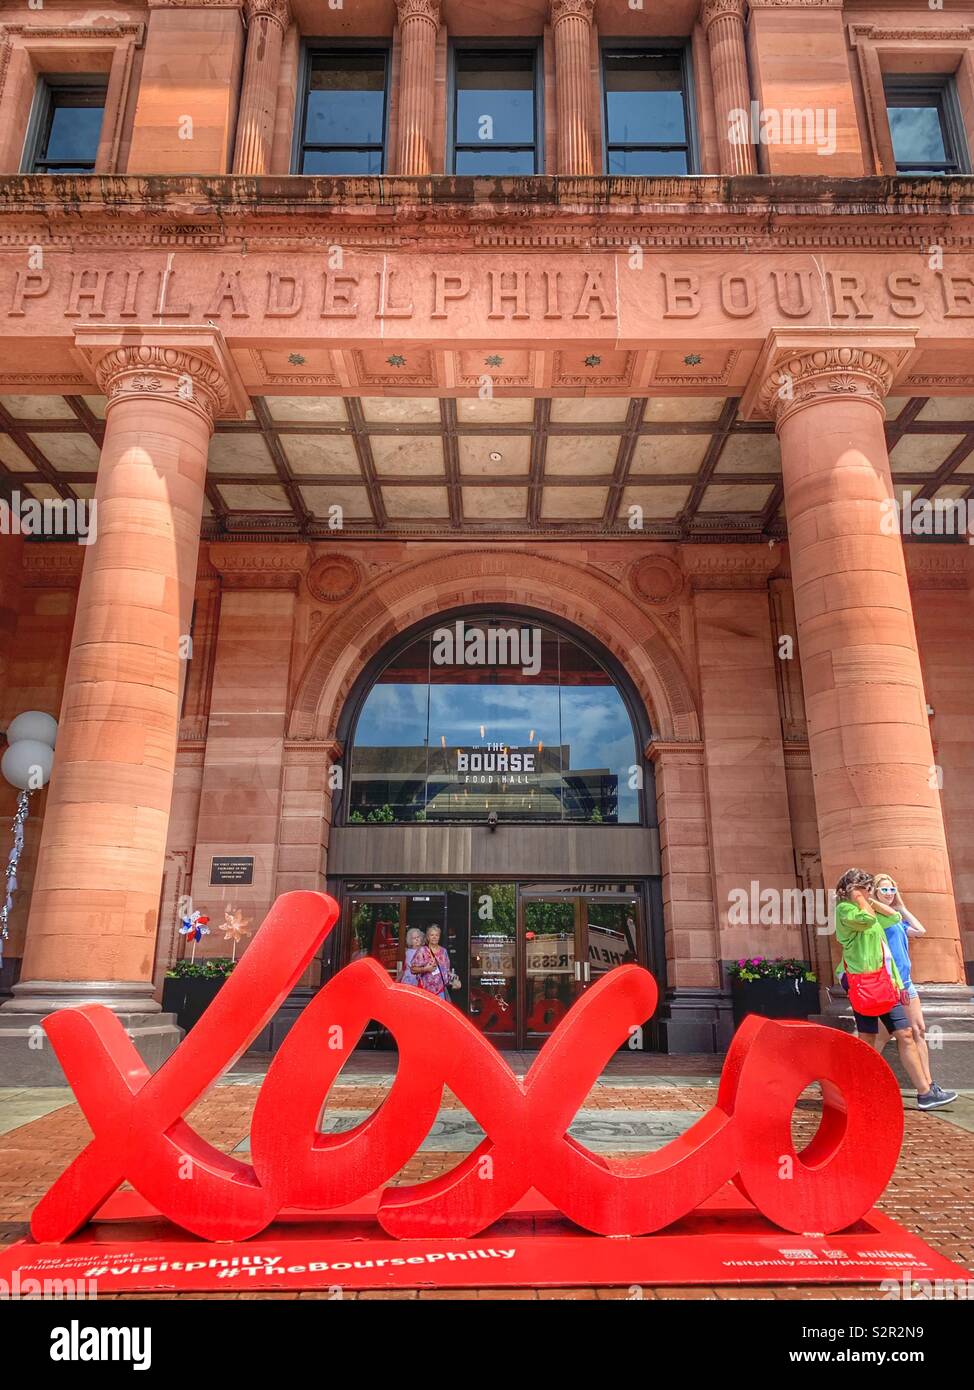 La Filadelfia Bourse - Edificio storico ora food hall con amore xoxo simbolo scultura, Philadelphia, Pennsylvania, STATI UNITI D'AMERICA Foto Stock